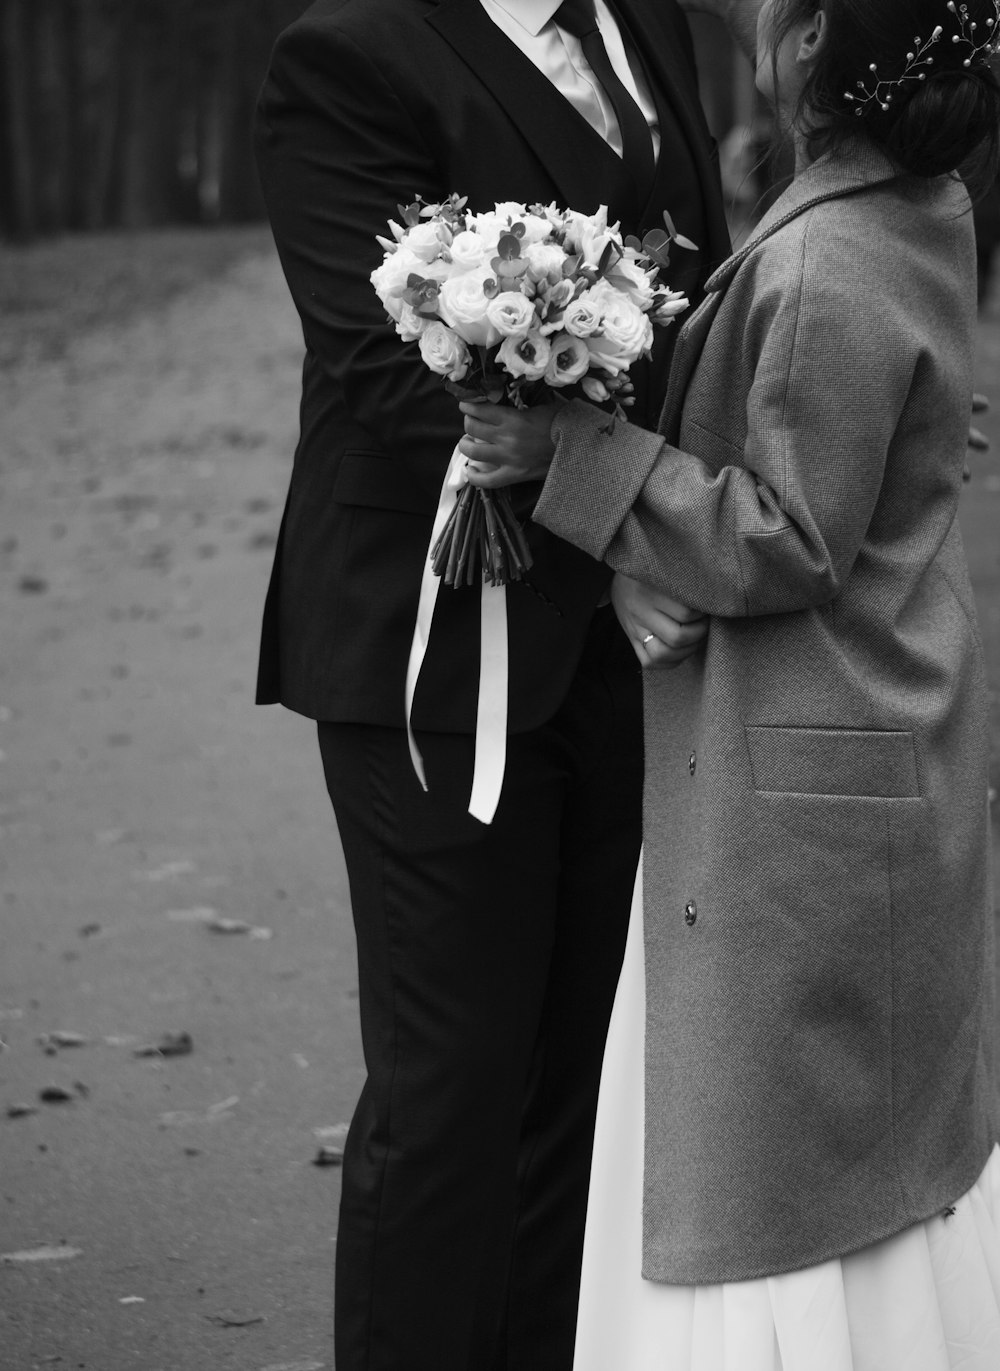 Ein Mann und eine Frau, die Blumen halten